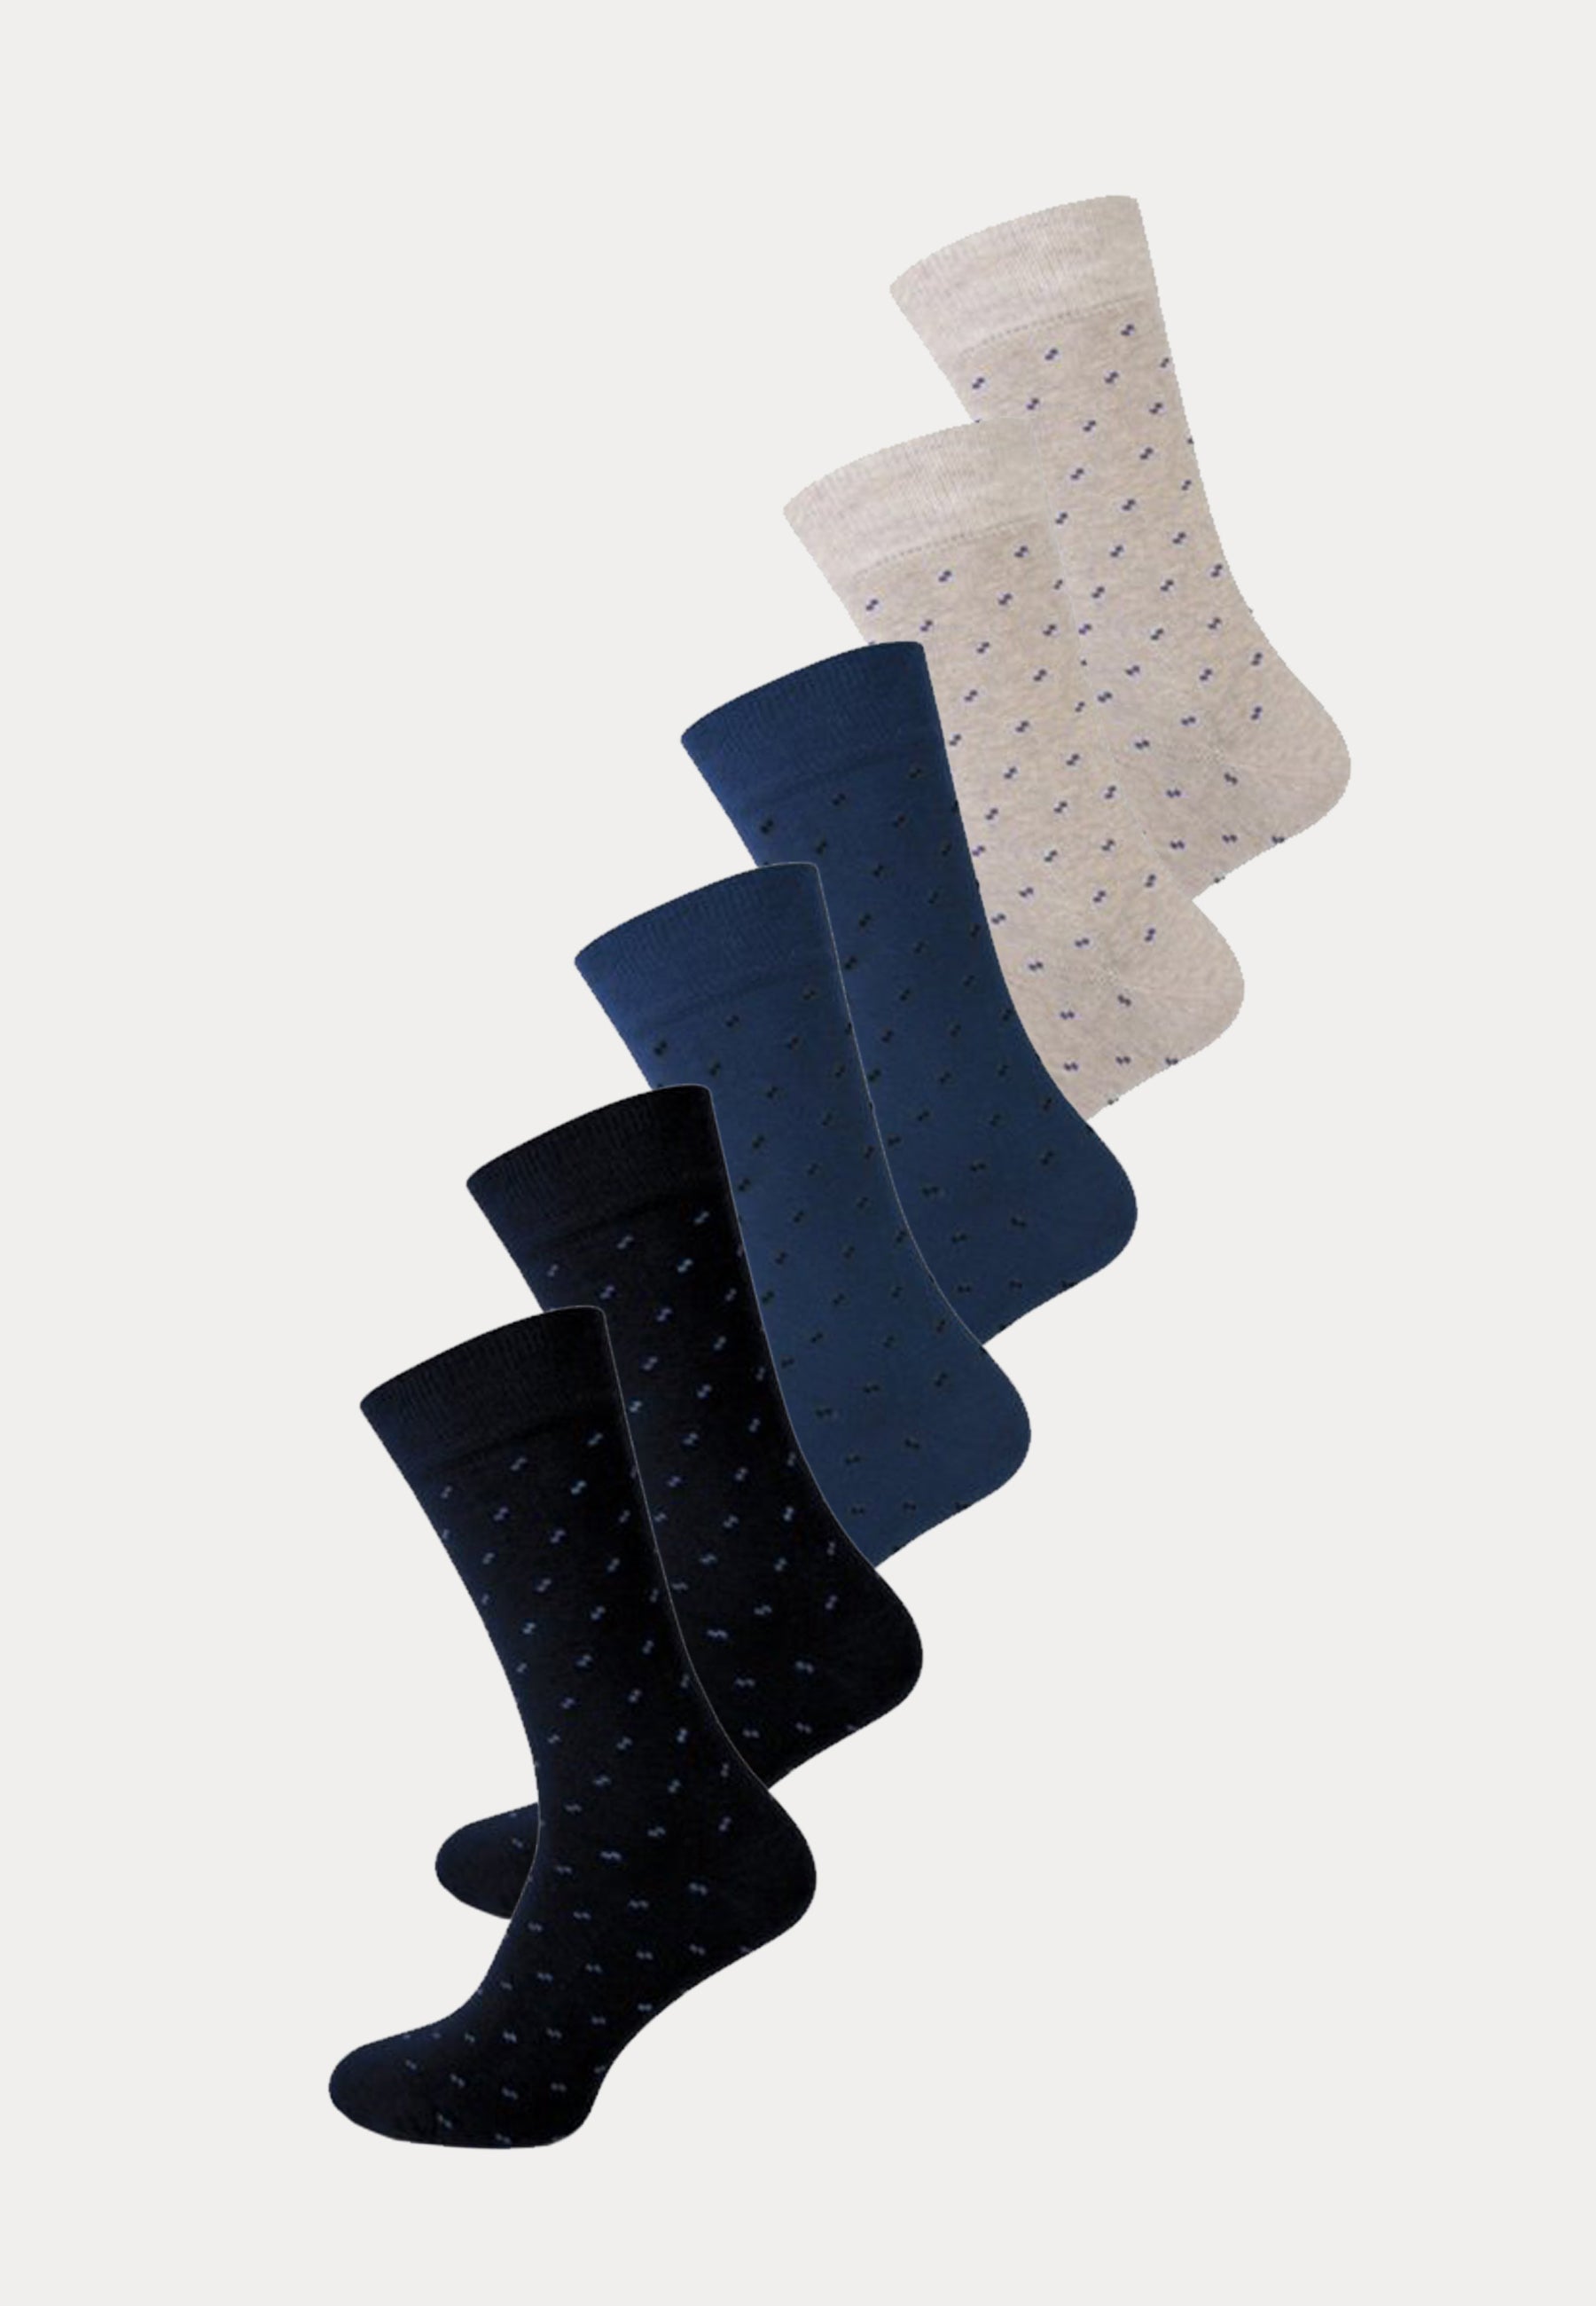 6 paar fashion socks met een klassieke print van het merk Teckel